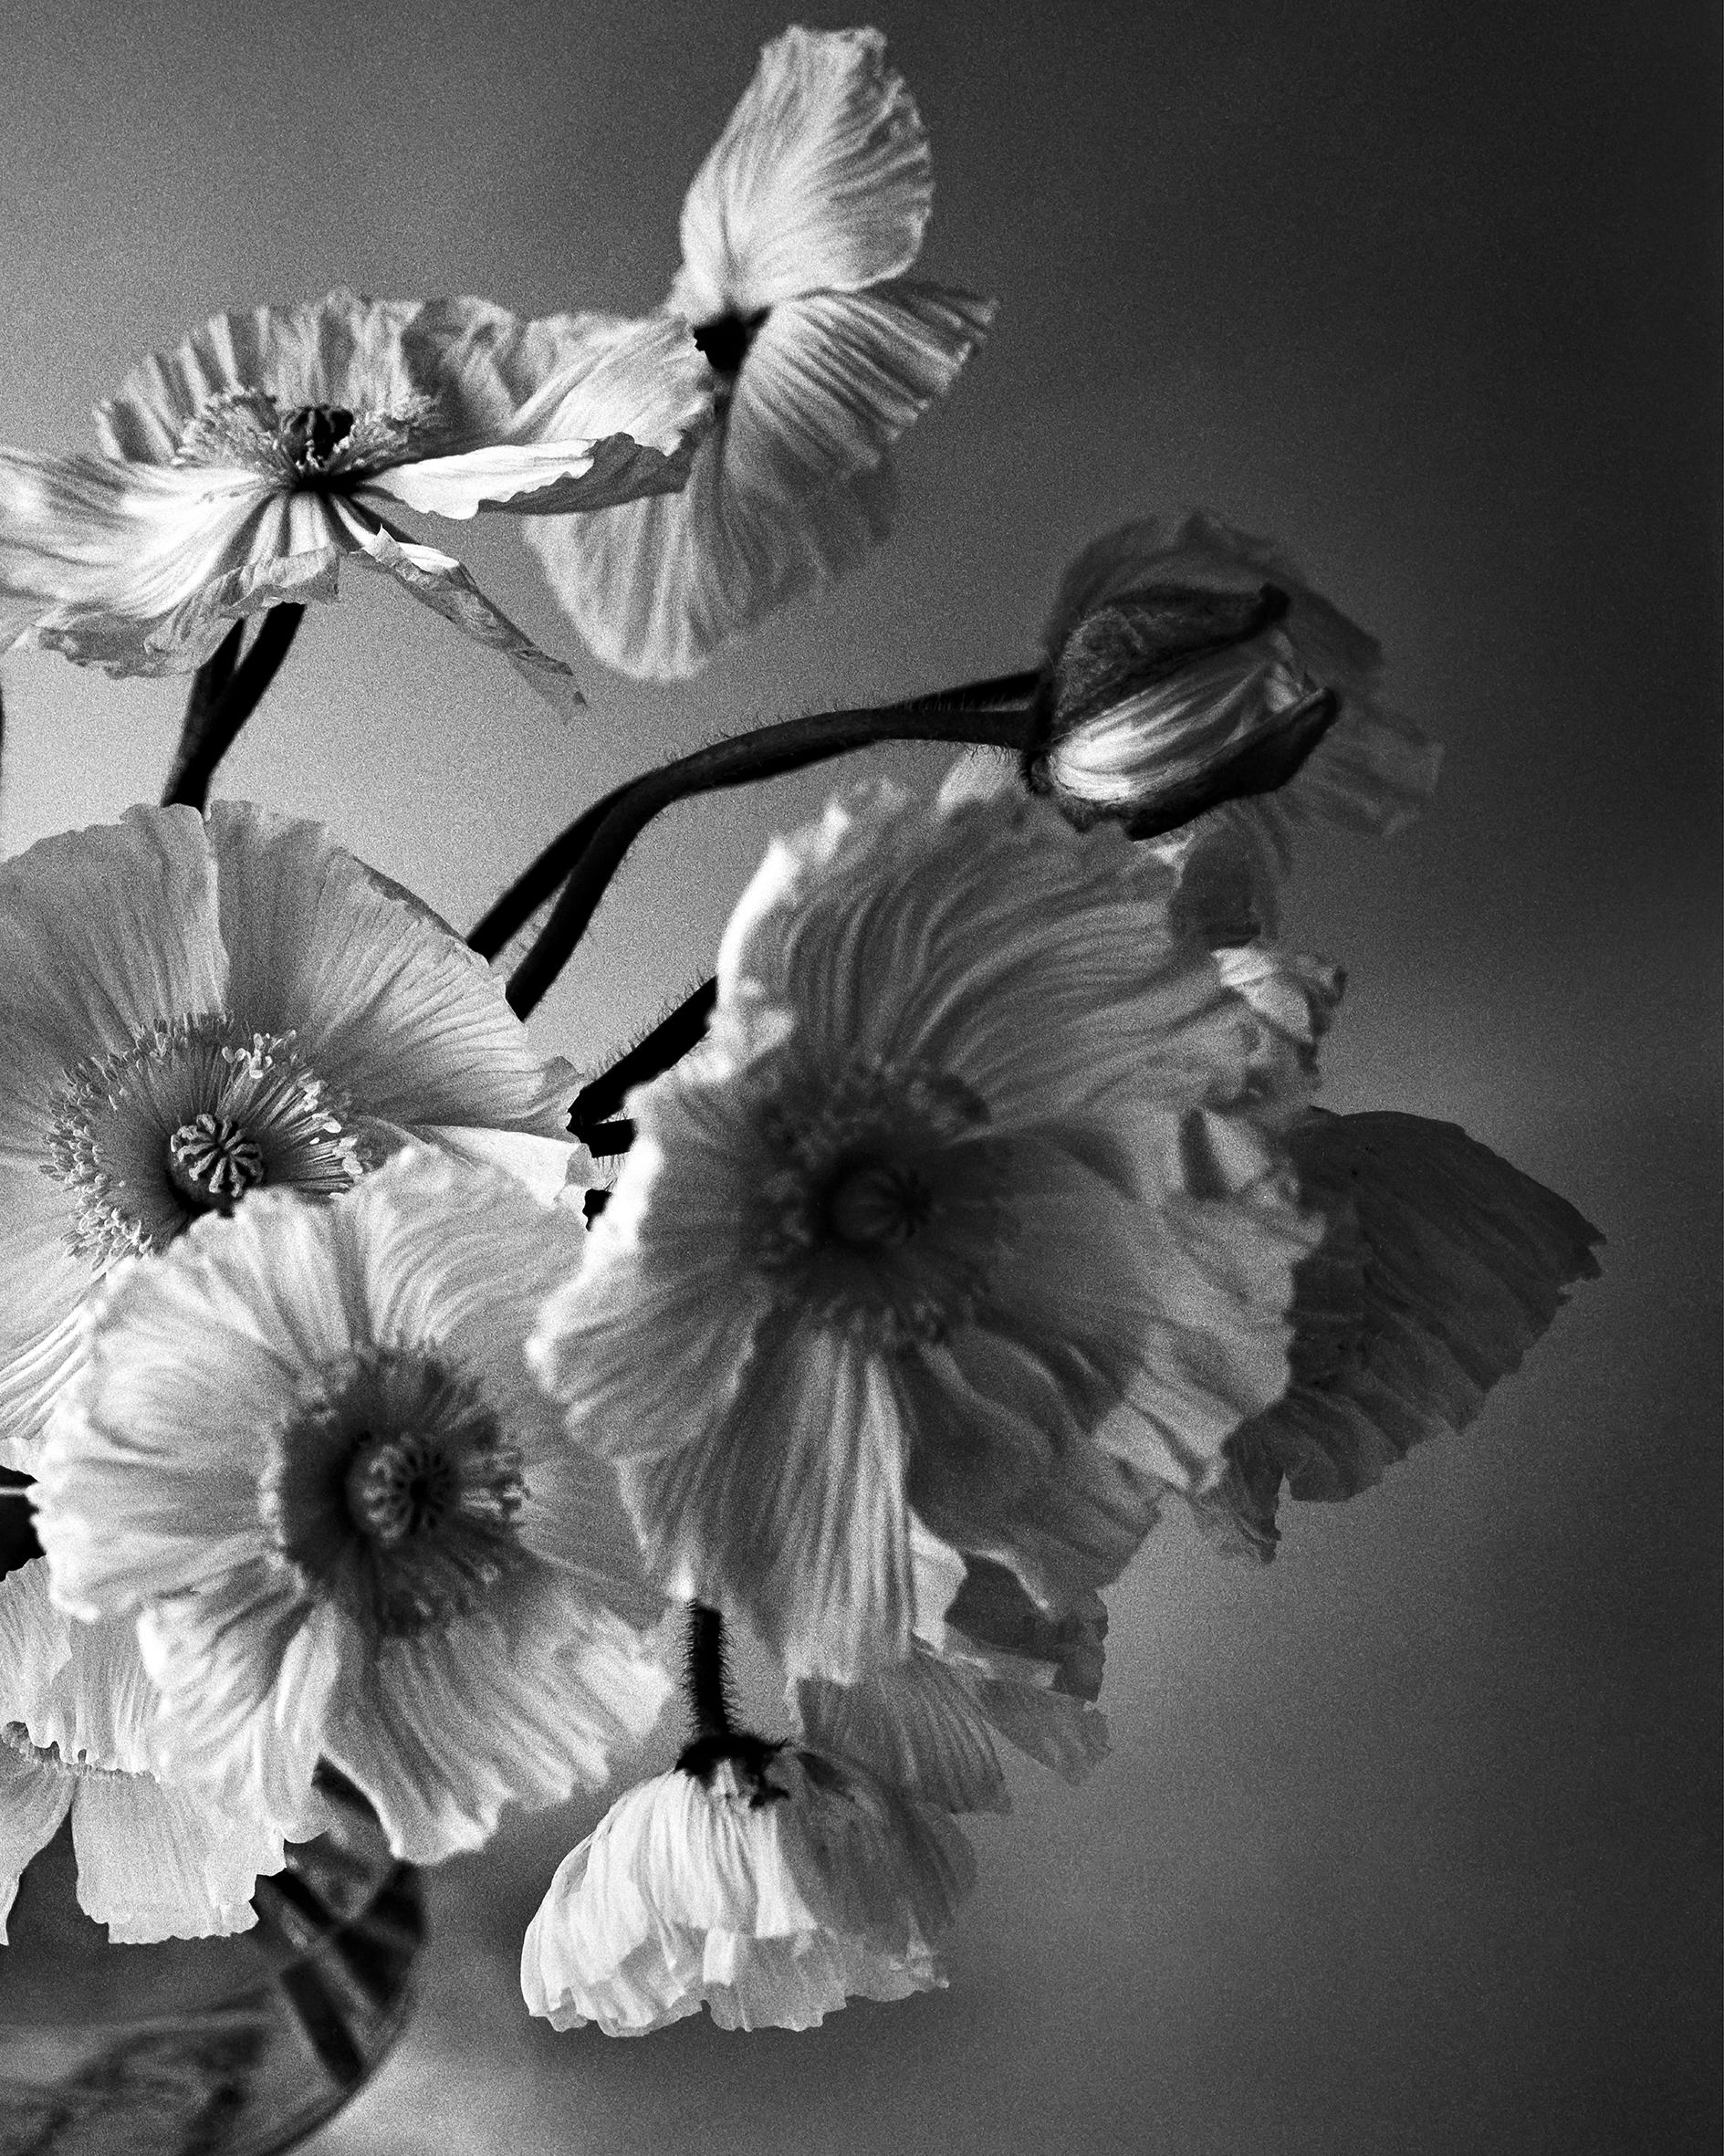 ppy Bunch – Schwarz-Weiß- analoge Blumenfotografie in Schwarz-Weiß, limitierte Auflage von 20 Stück (Zeitgenössisch), Photograph, von Ugne Pouwell